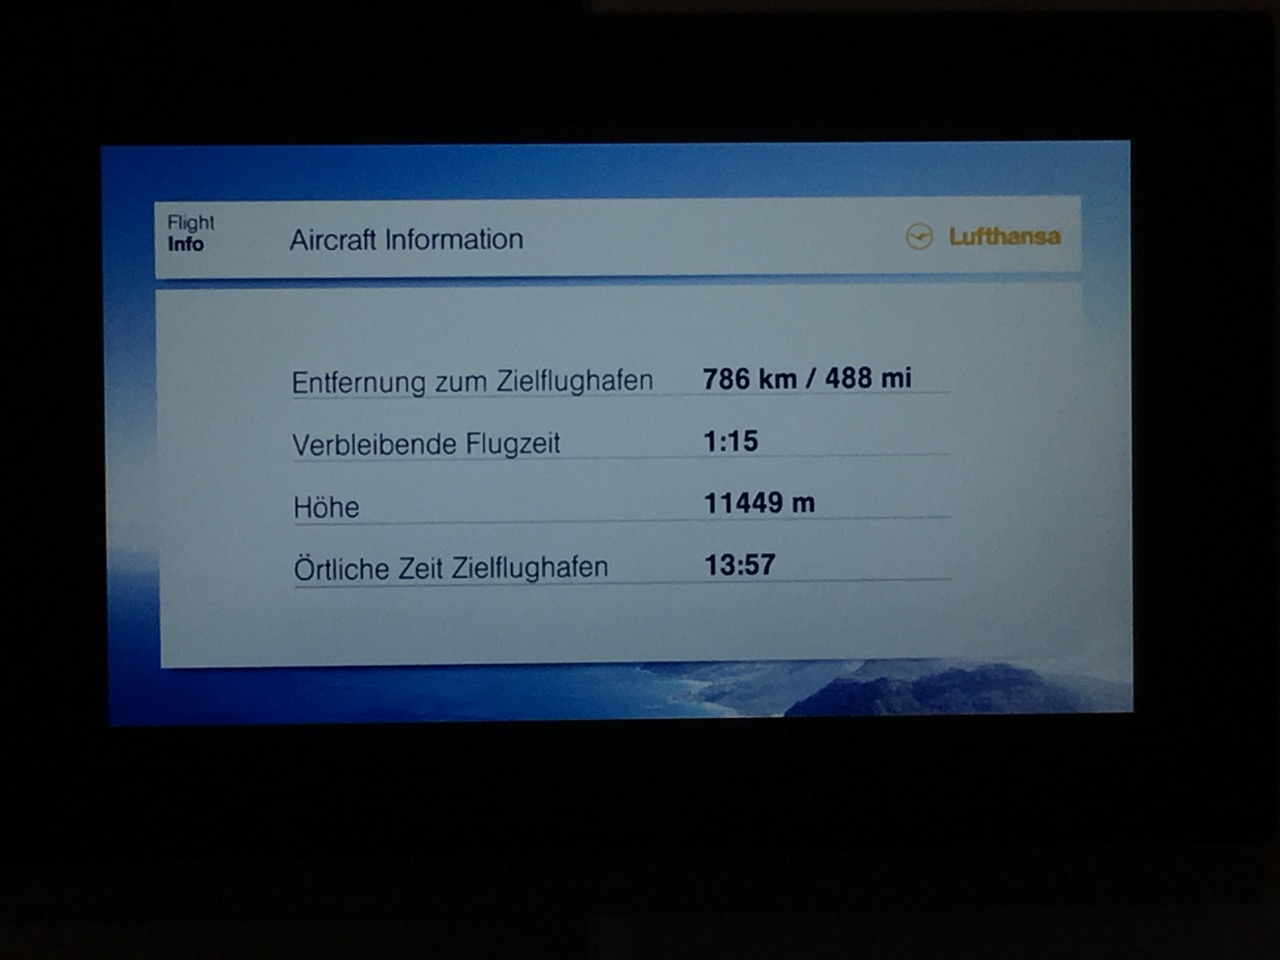 Lufthansa Airshow